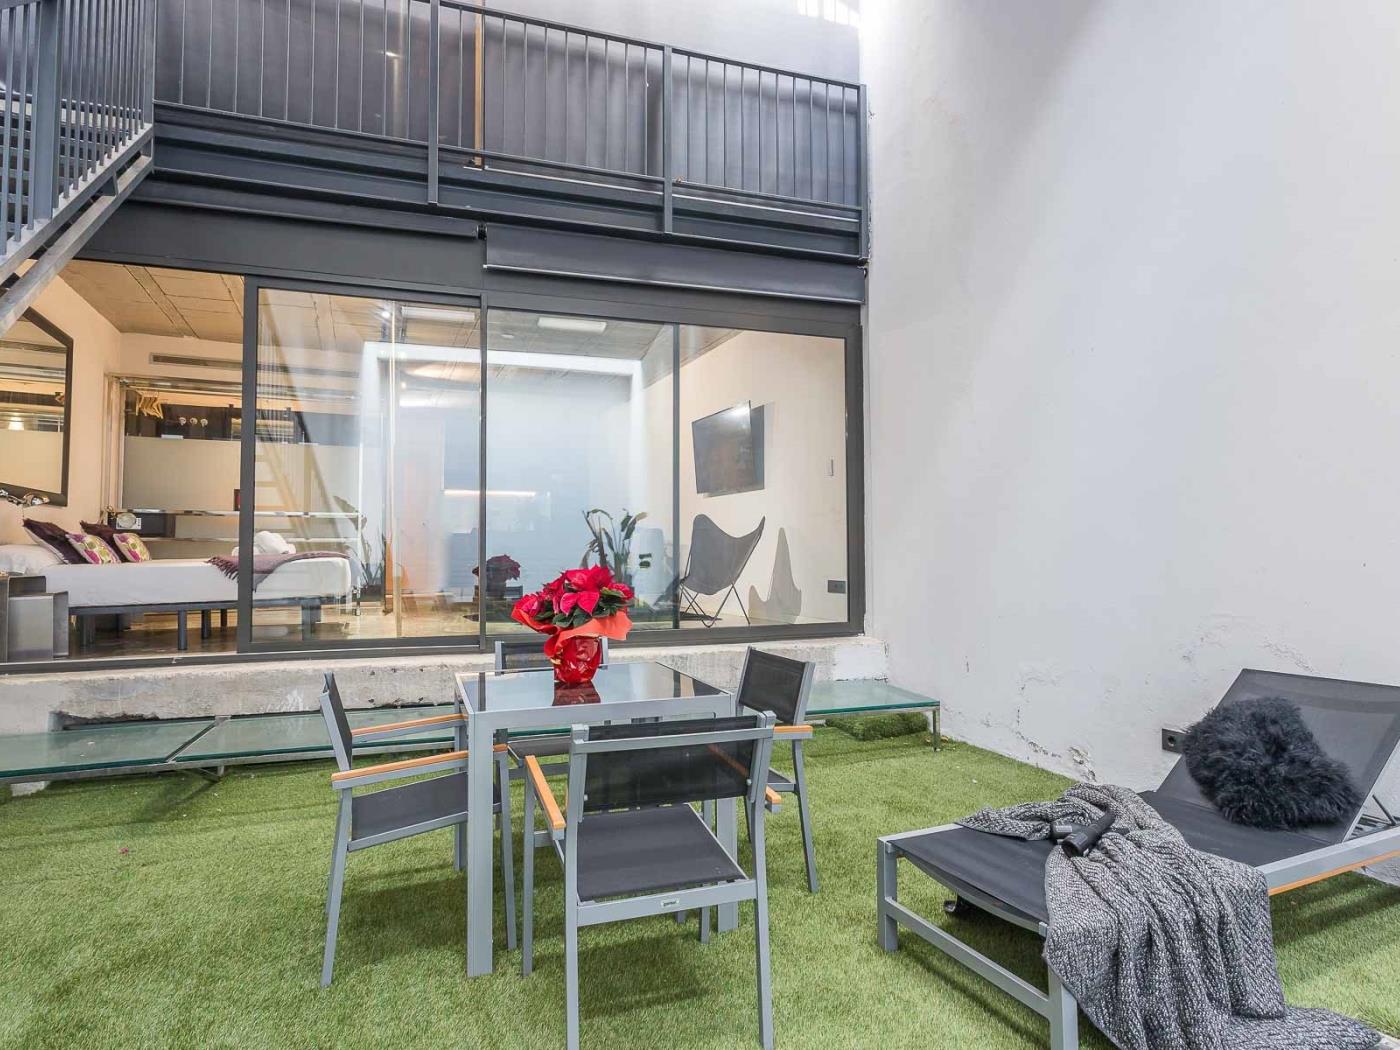 Appartamento con terrazza/giardino in comune molto vicino alla Clinica Barraquer - My Space Barcelona Appartamenti